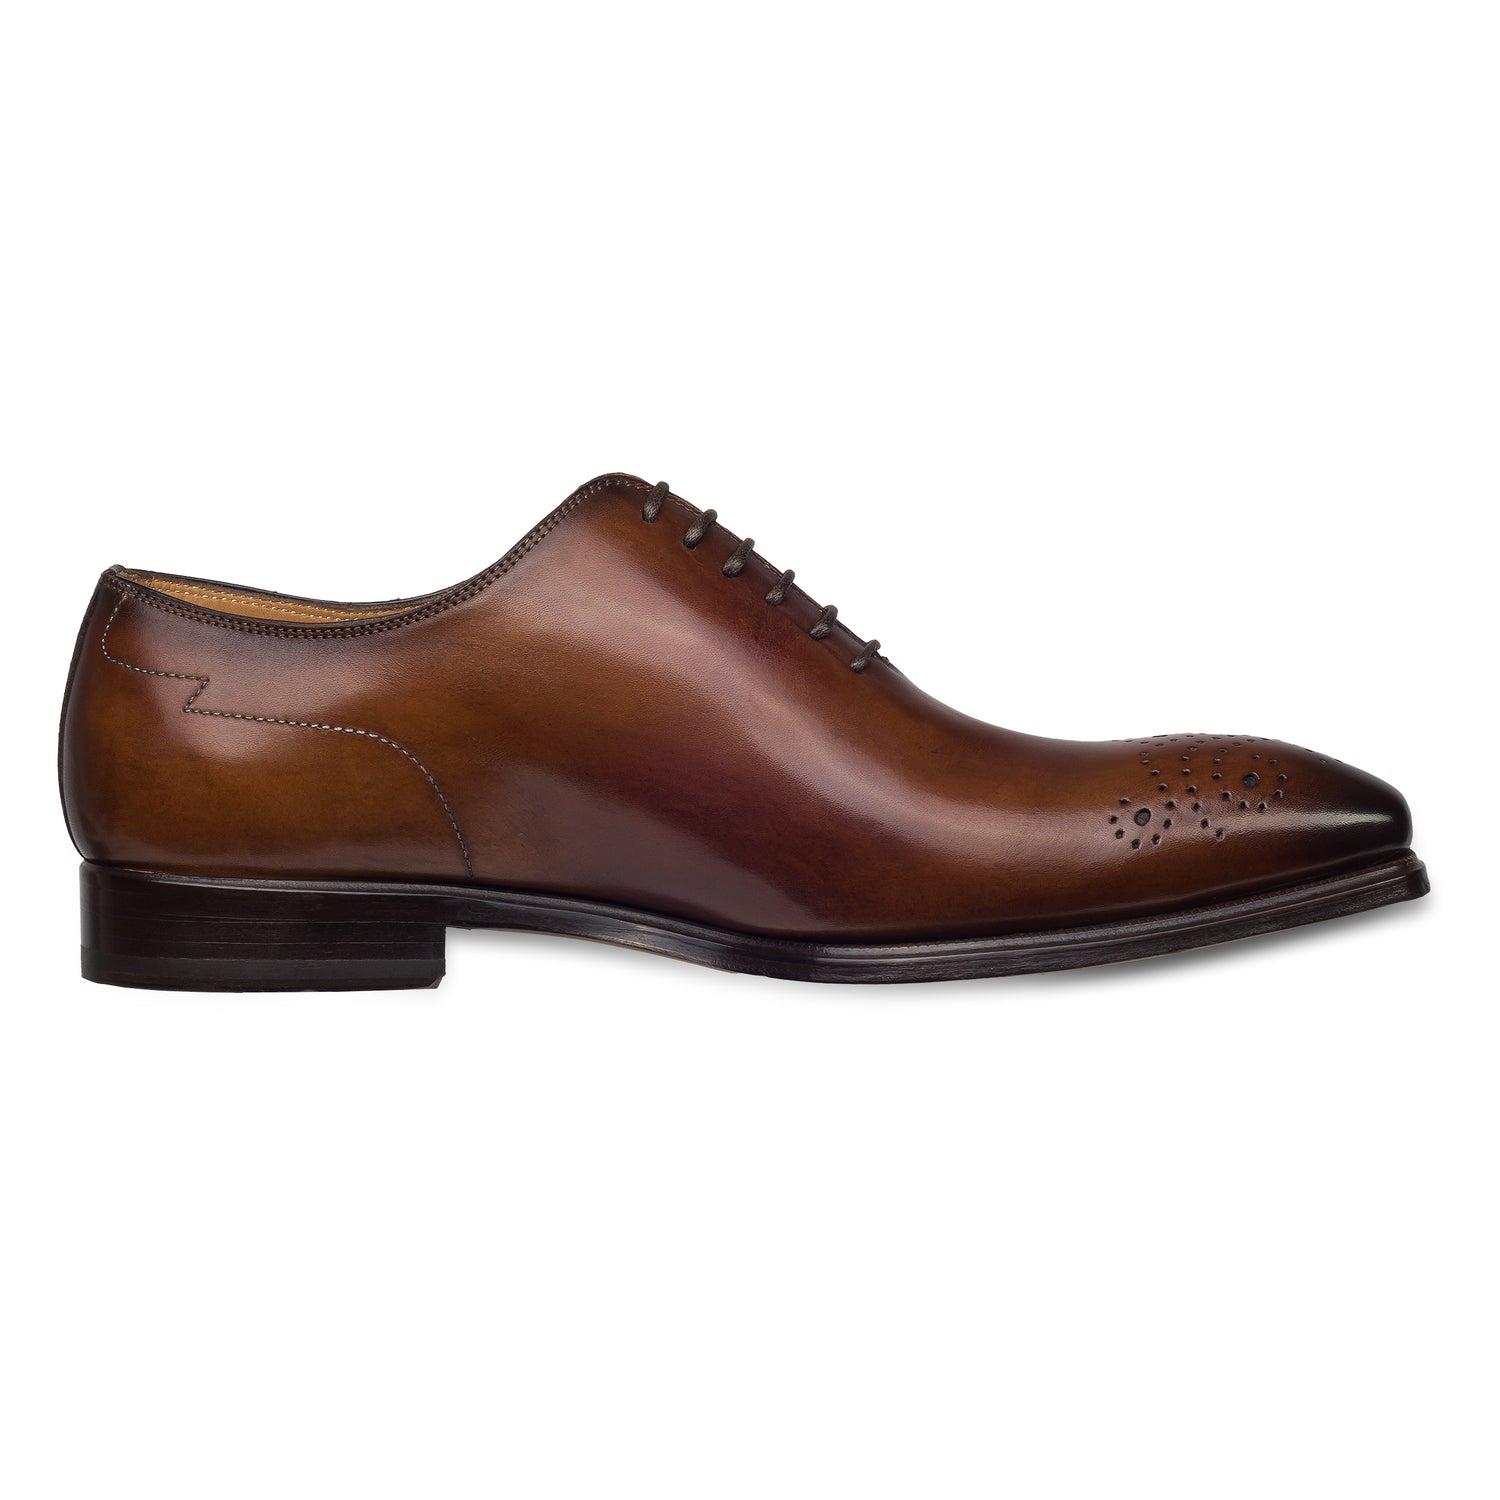 Branchini - Italienische Herren Anzugschuhe Oxford / Onecut in braun. Aus Kalbsleder handgefertigt und durchgenäht. Seitliche Ansicht der Innenseite linker Schuh.